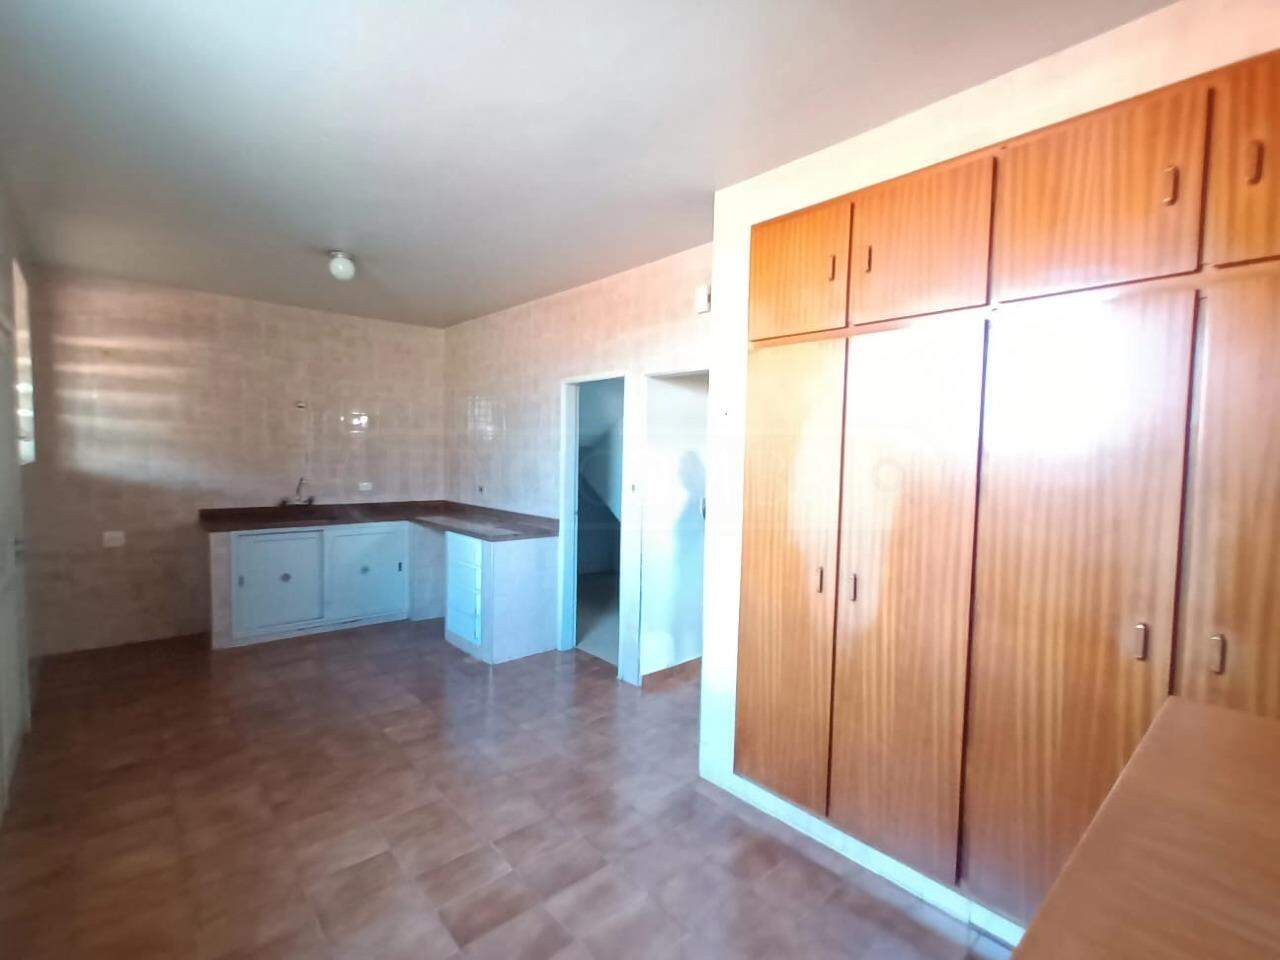 Casa à venda, 6 quartos, sendo 1 suíte, 3 vagas, no bairro Vila Rezende em Piracicaba - SP